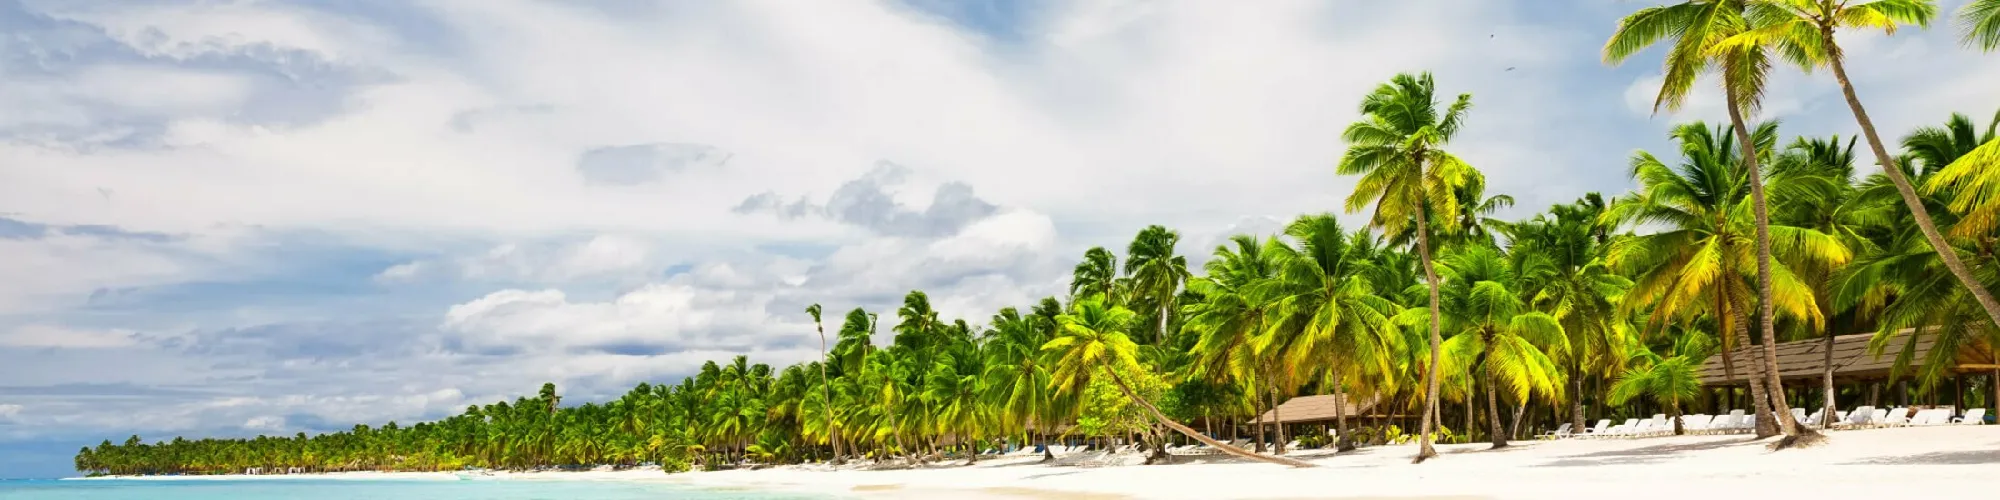 Urlaub in der Karibik background image